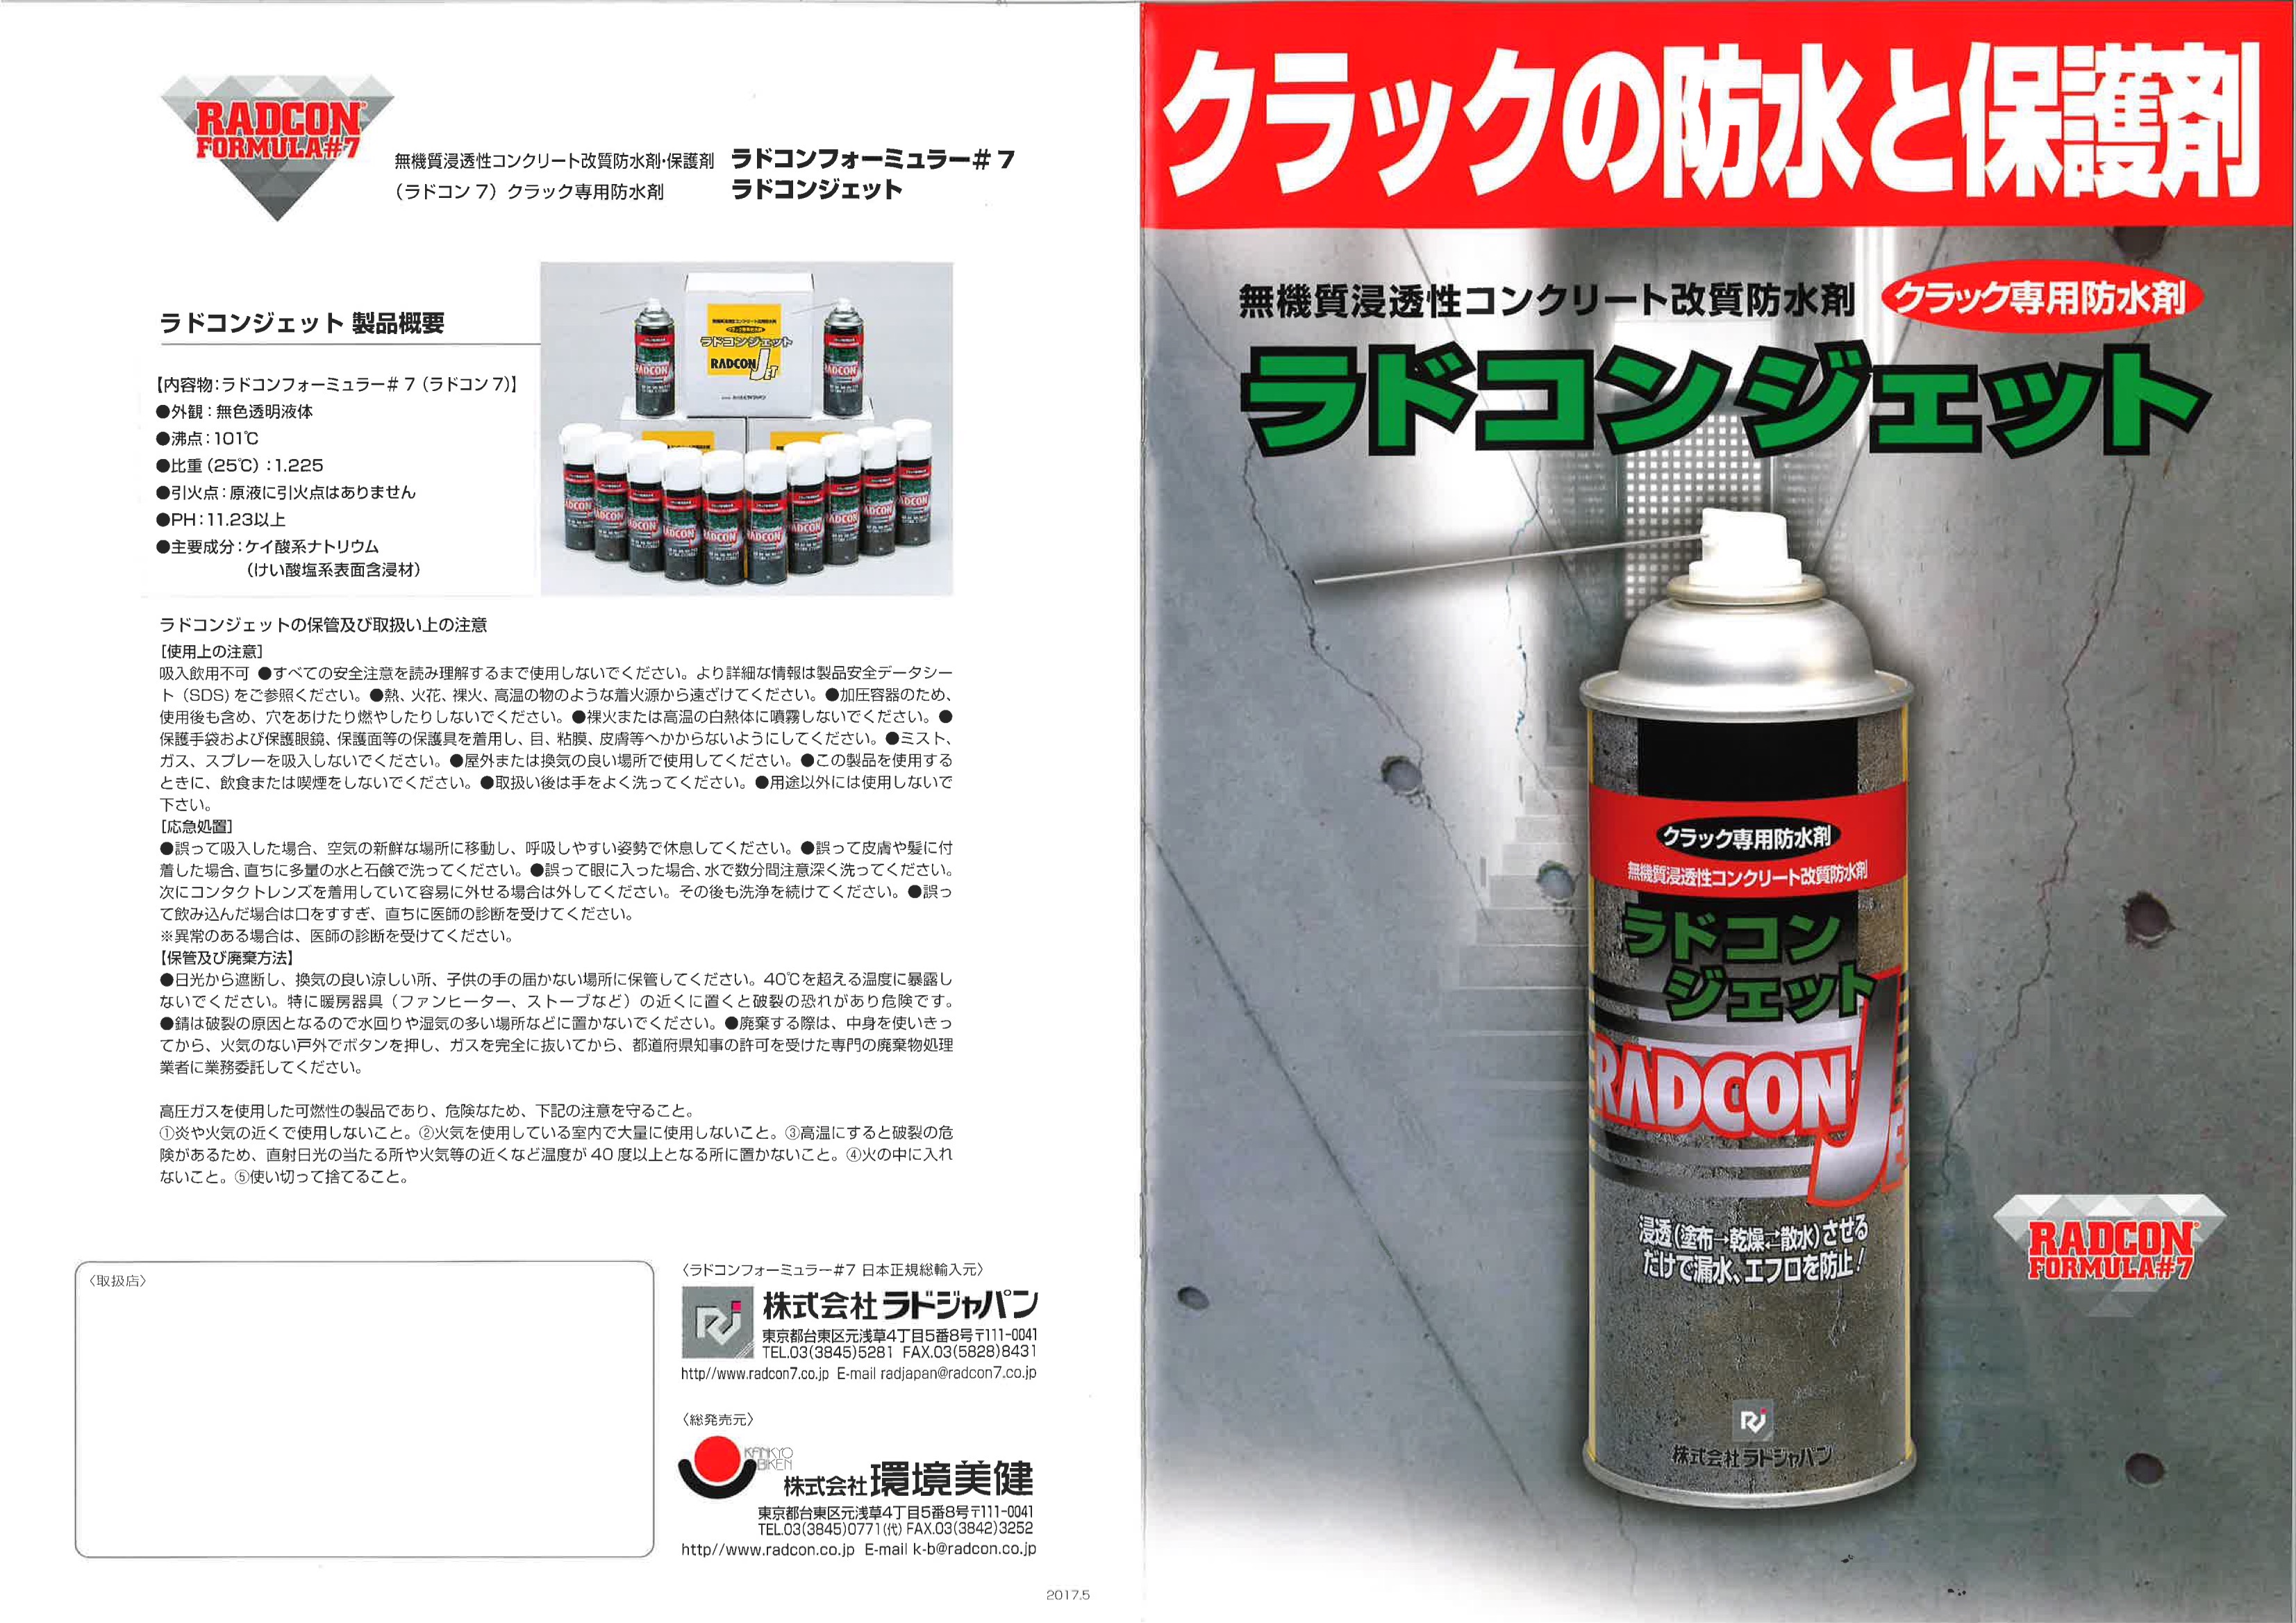 ラドコンジェット 330ml/スプレー缶 クラック専用防水剤 : hitnet-0855